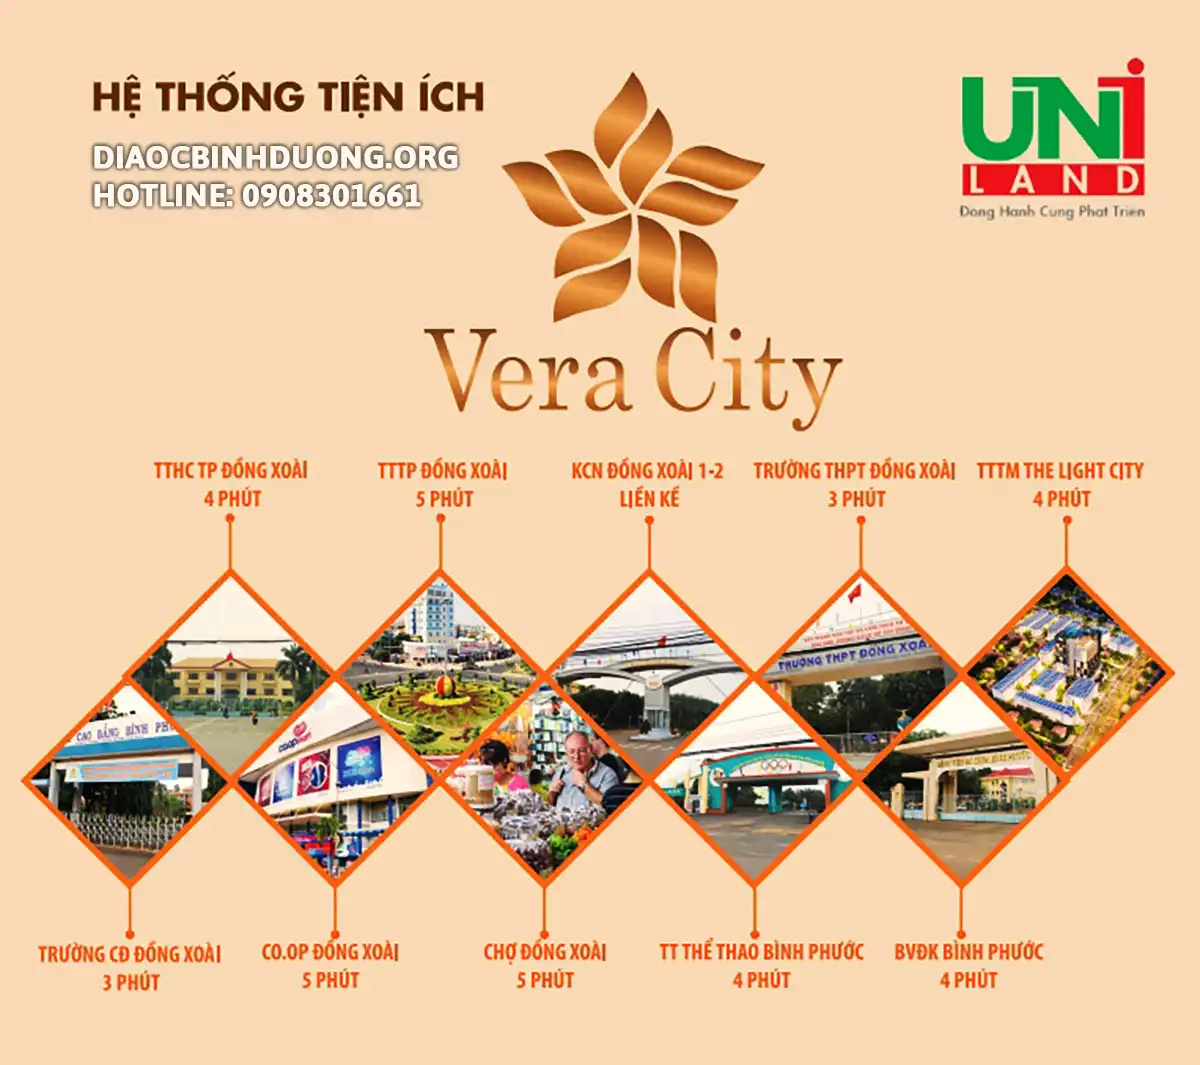 Tiện ích xung quanh dự án Vera City Tiến Thành Đồng Xoài